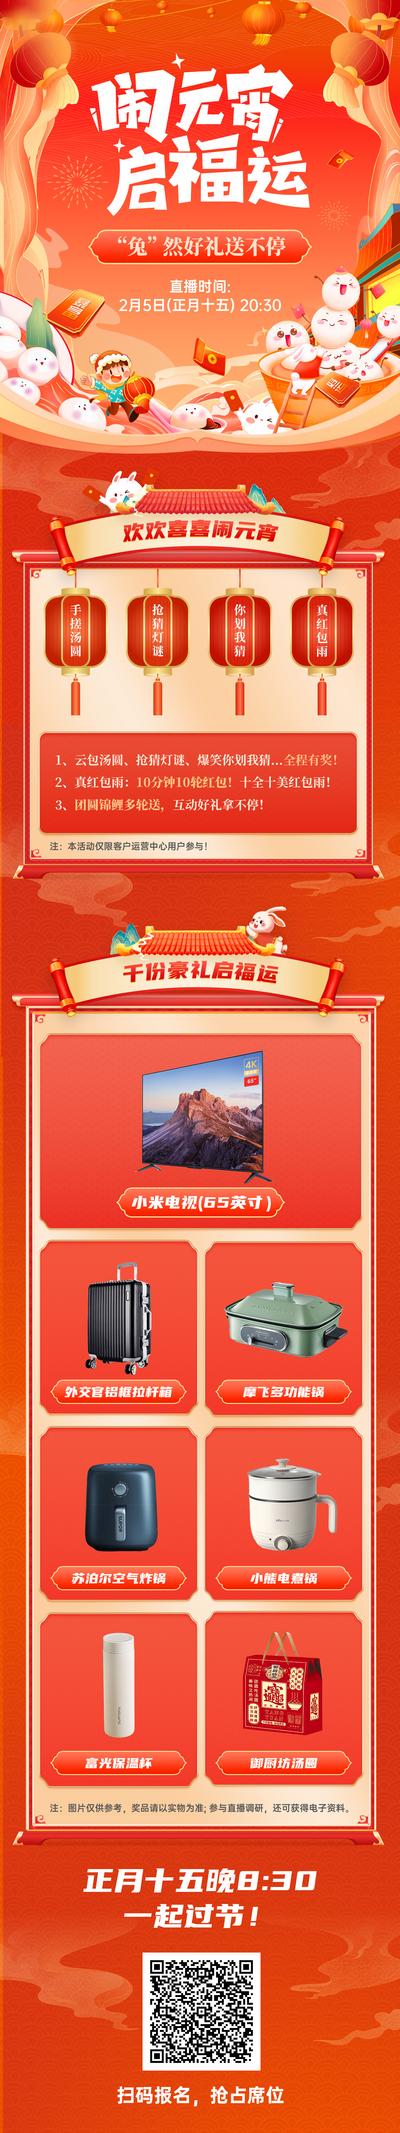 南门网 海报 长图 中国传统节日 元宵节 直播 活动 礼品